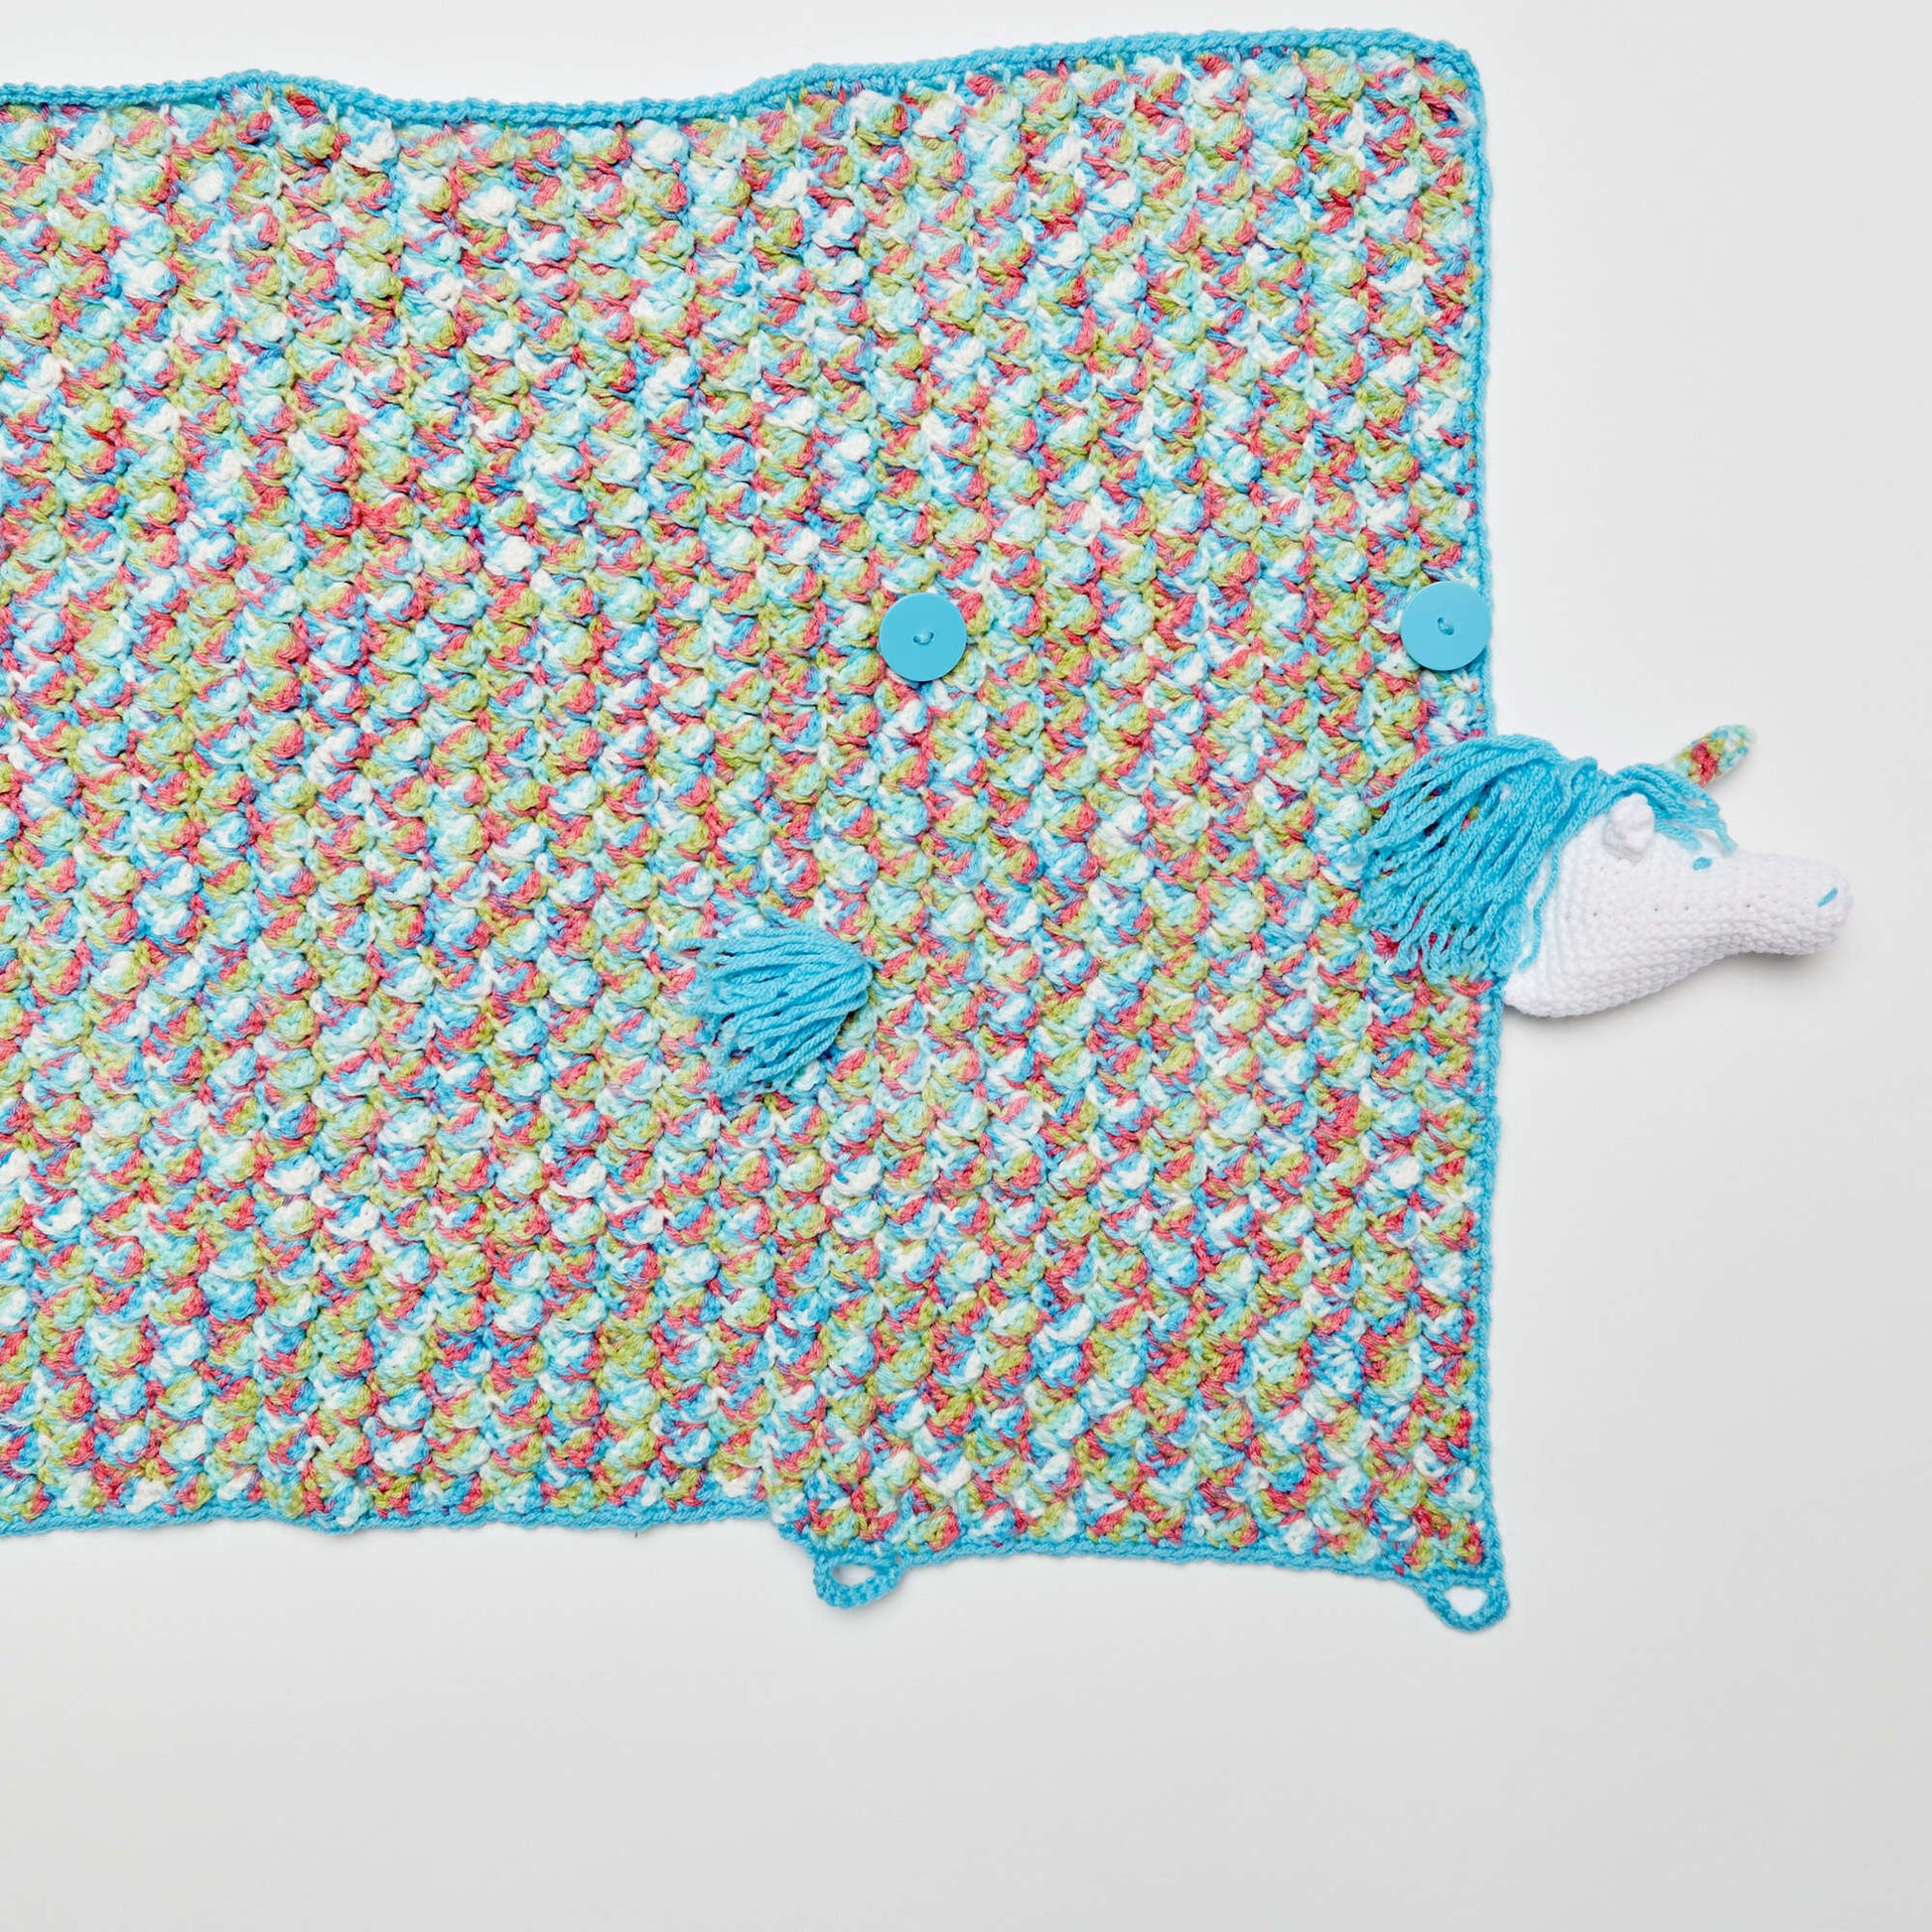 Free Red Heart Unicorn Crochet Baby Blanket Pattern